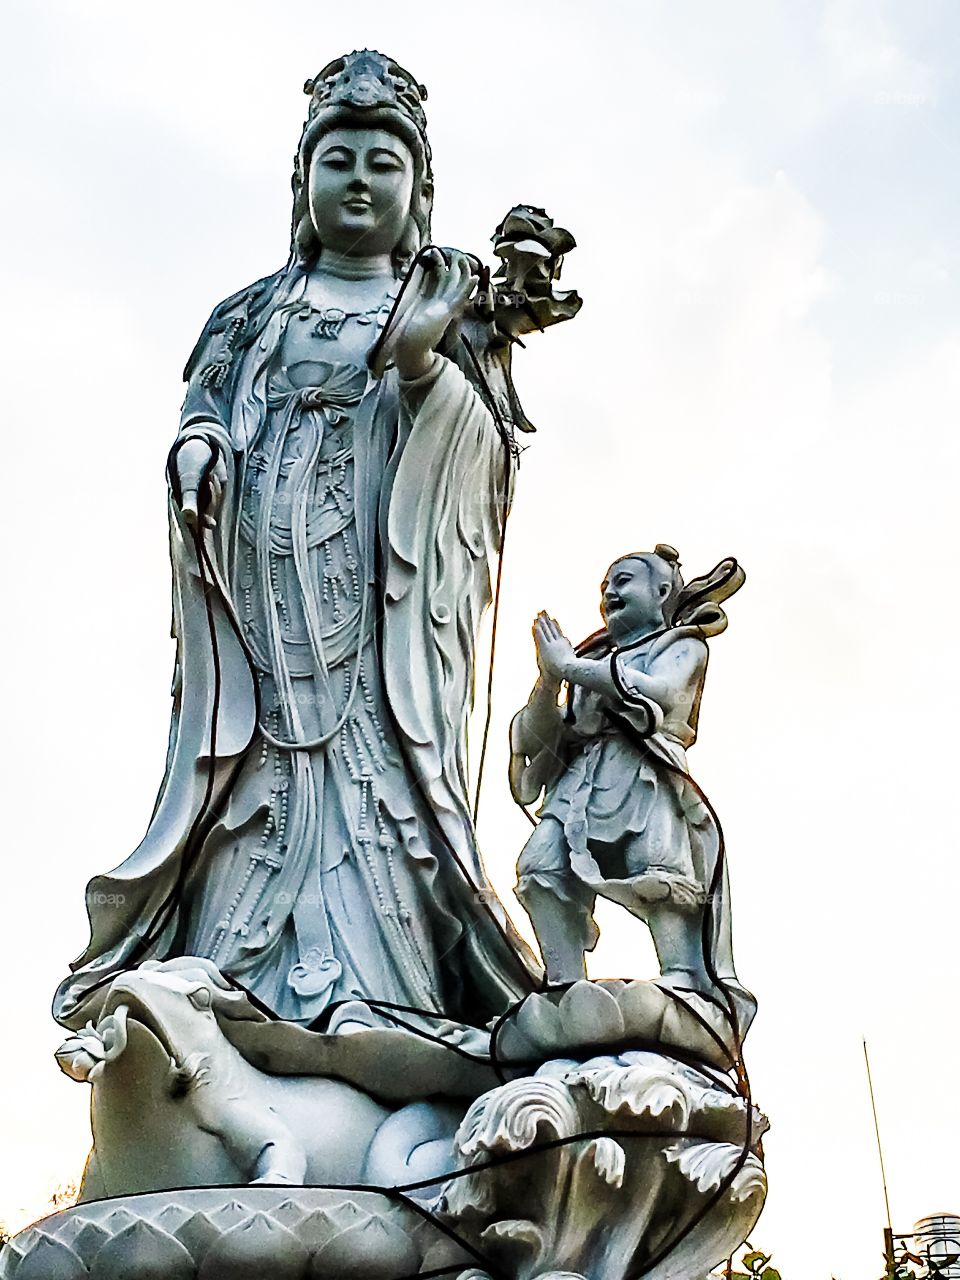 Guan yin statue